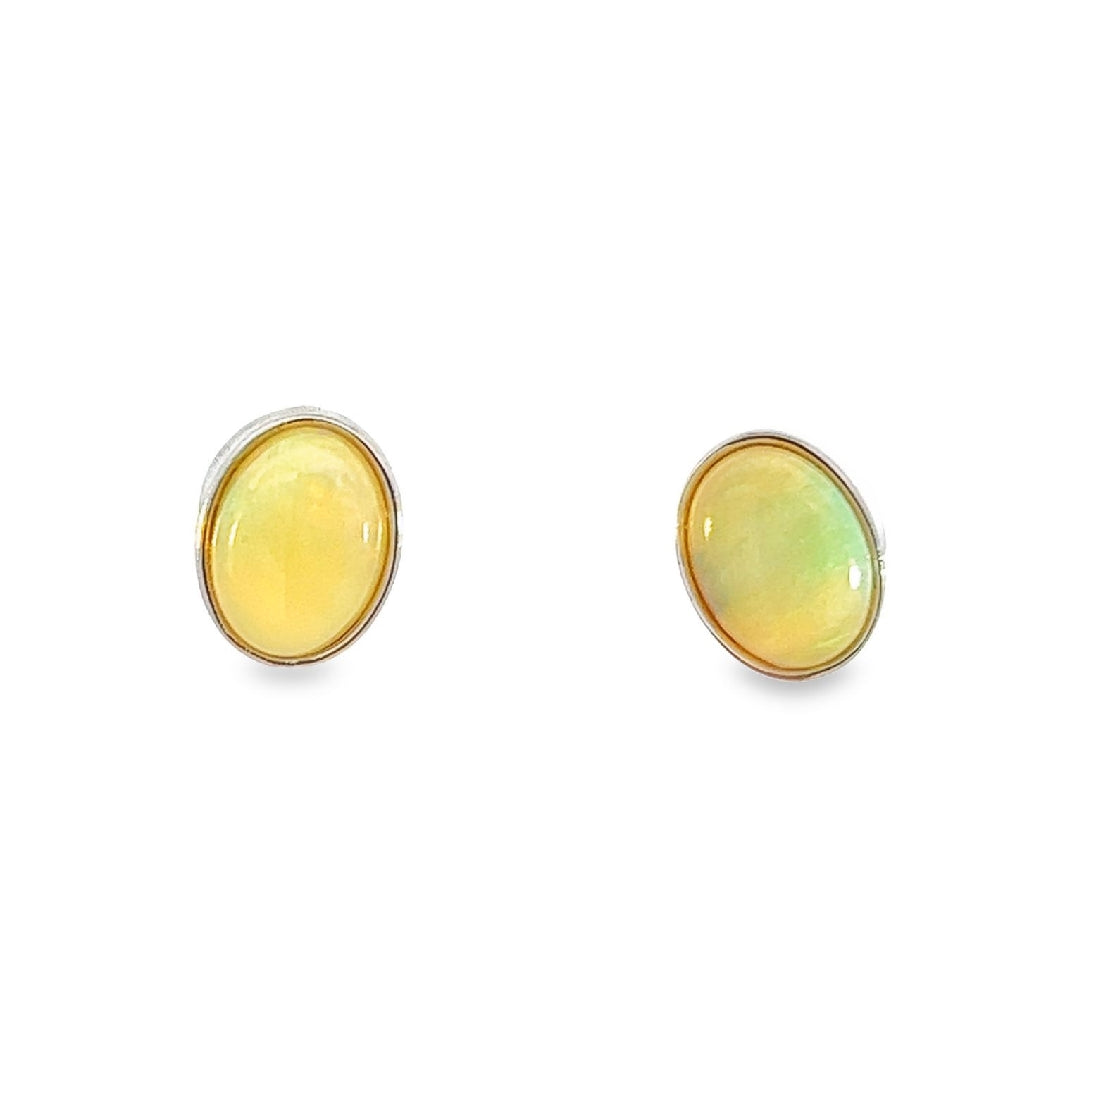 Sterling Silver 8x6mm White Opal earrings bezel set studs - Masterpiece Jewellery Opal & Gems Sydney Australia | Online Shop